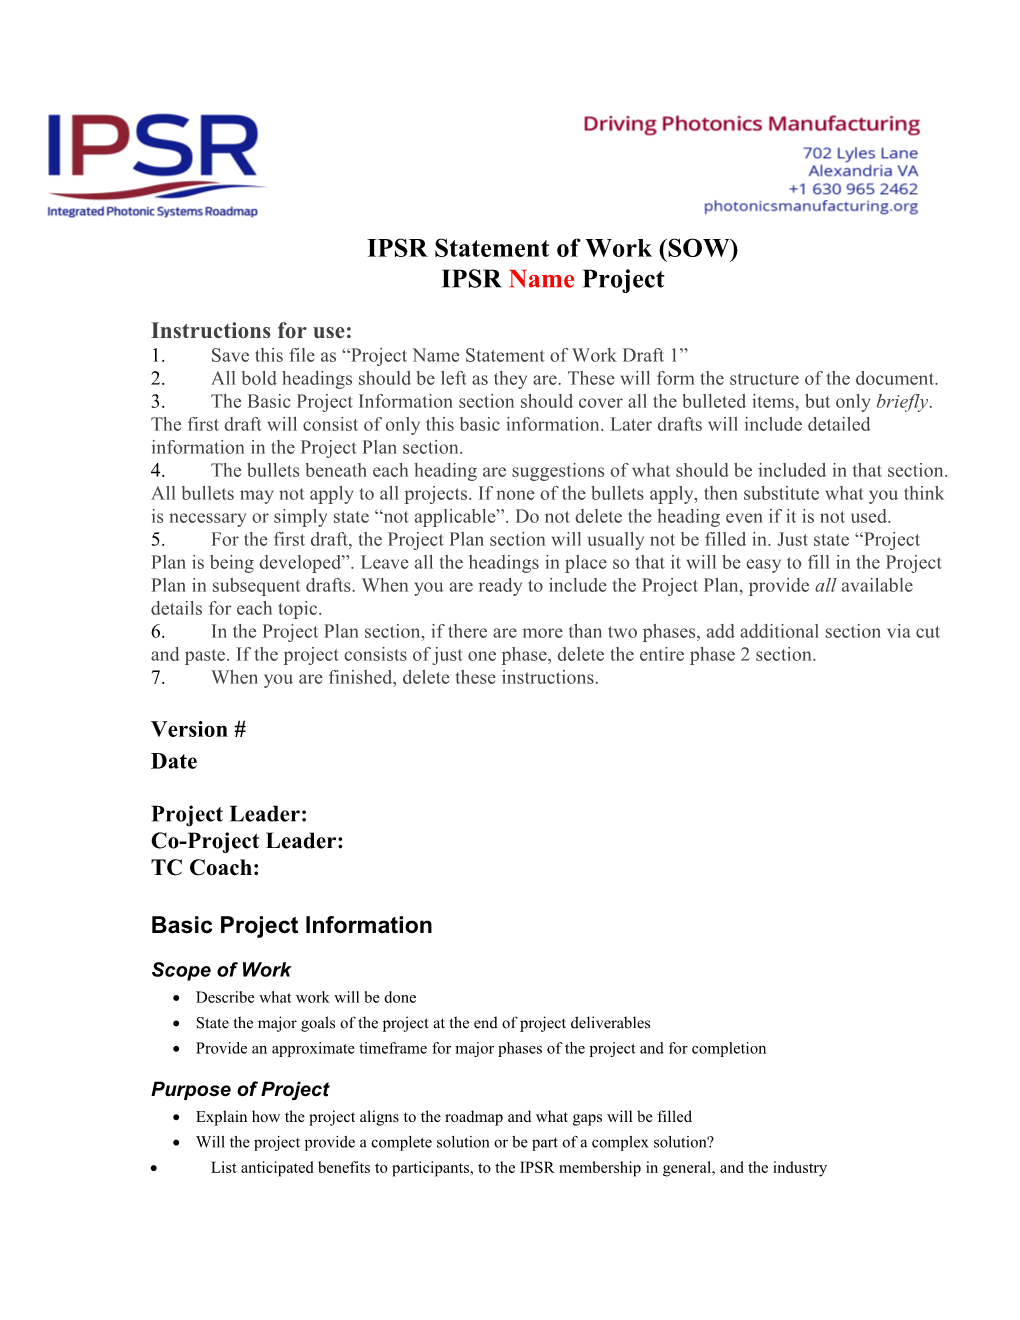 IPSR Statement of Work (SOW)